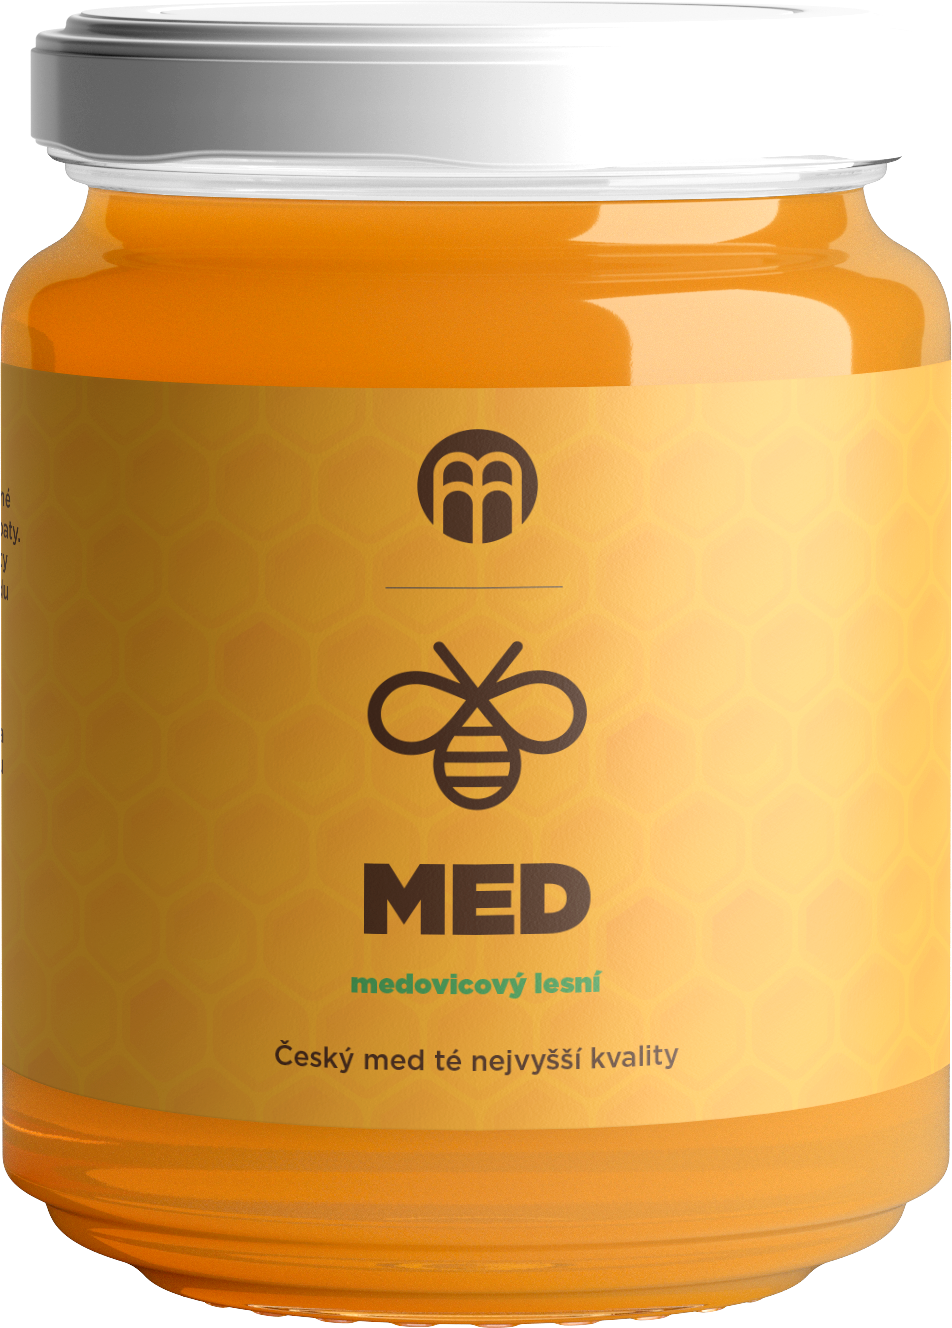 BrainMax Pure Med medovicový lesní, 475 g